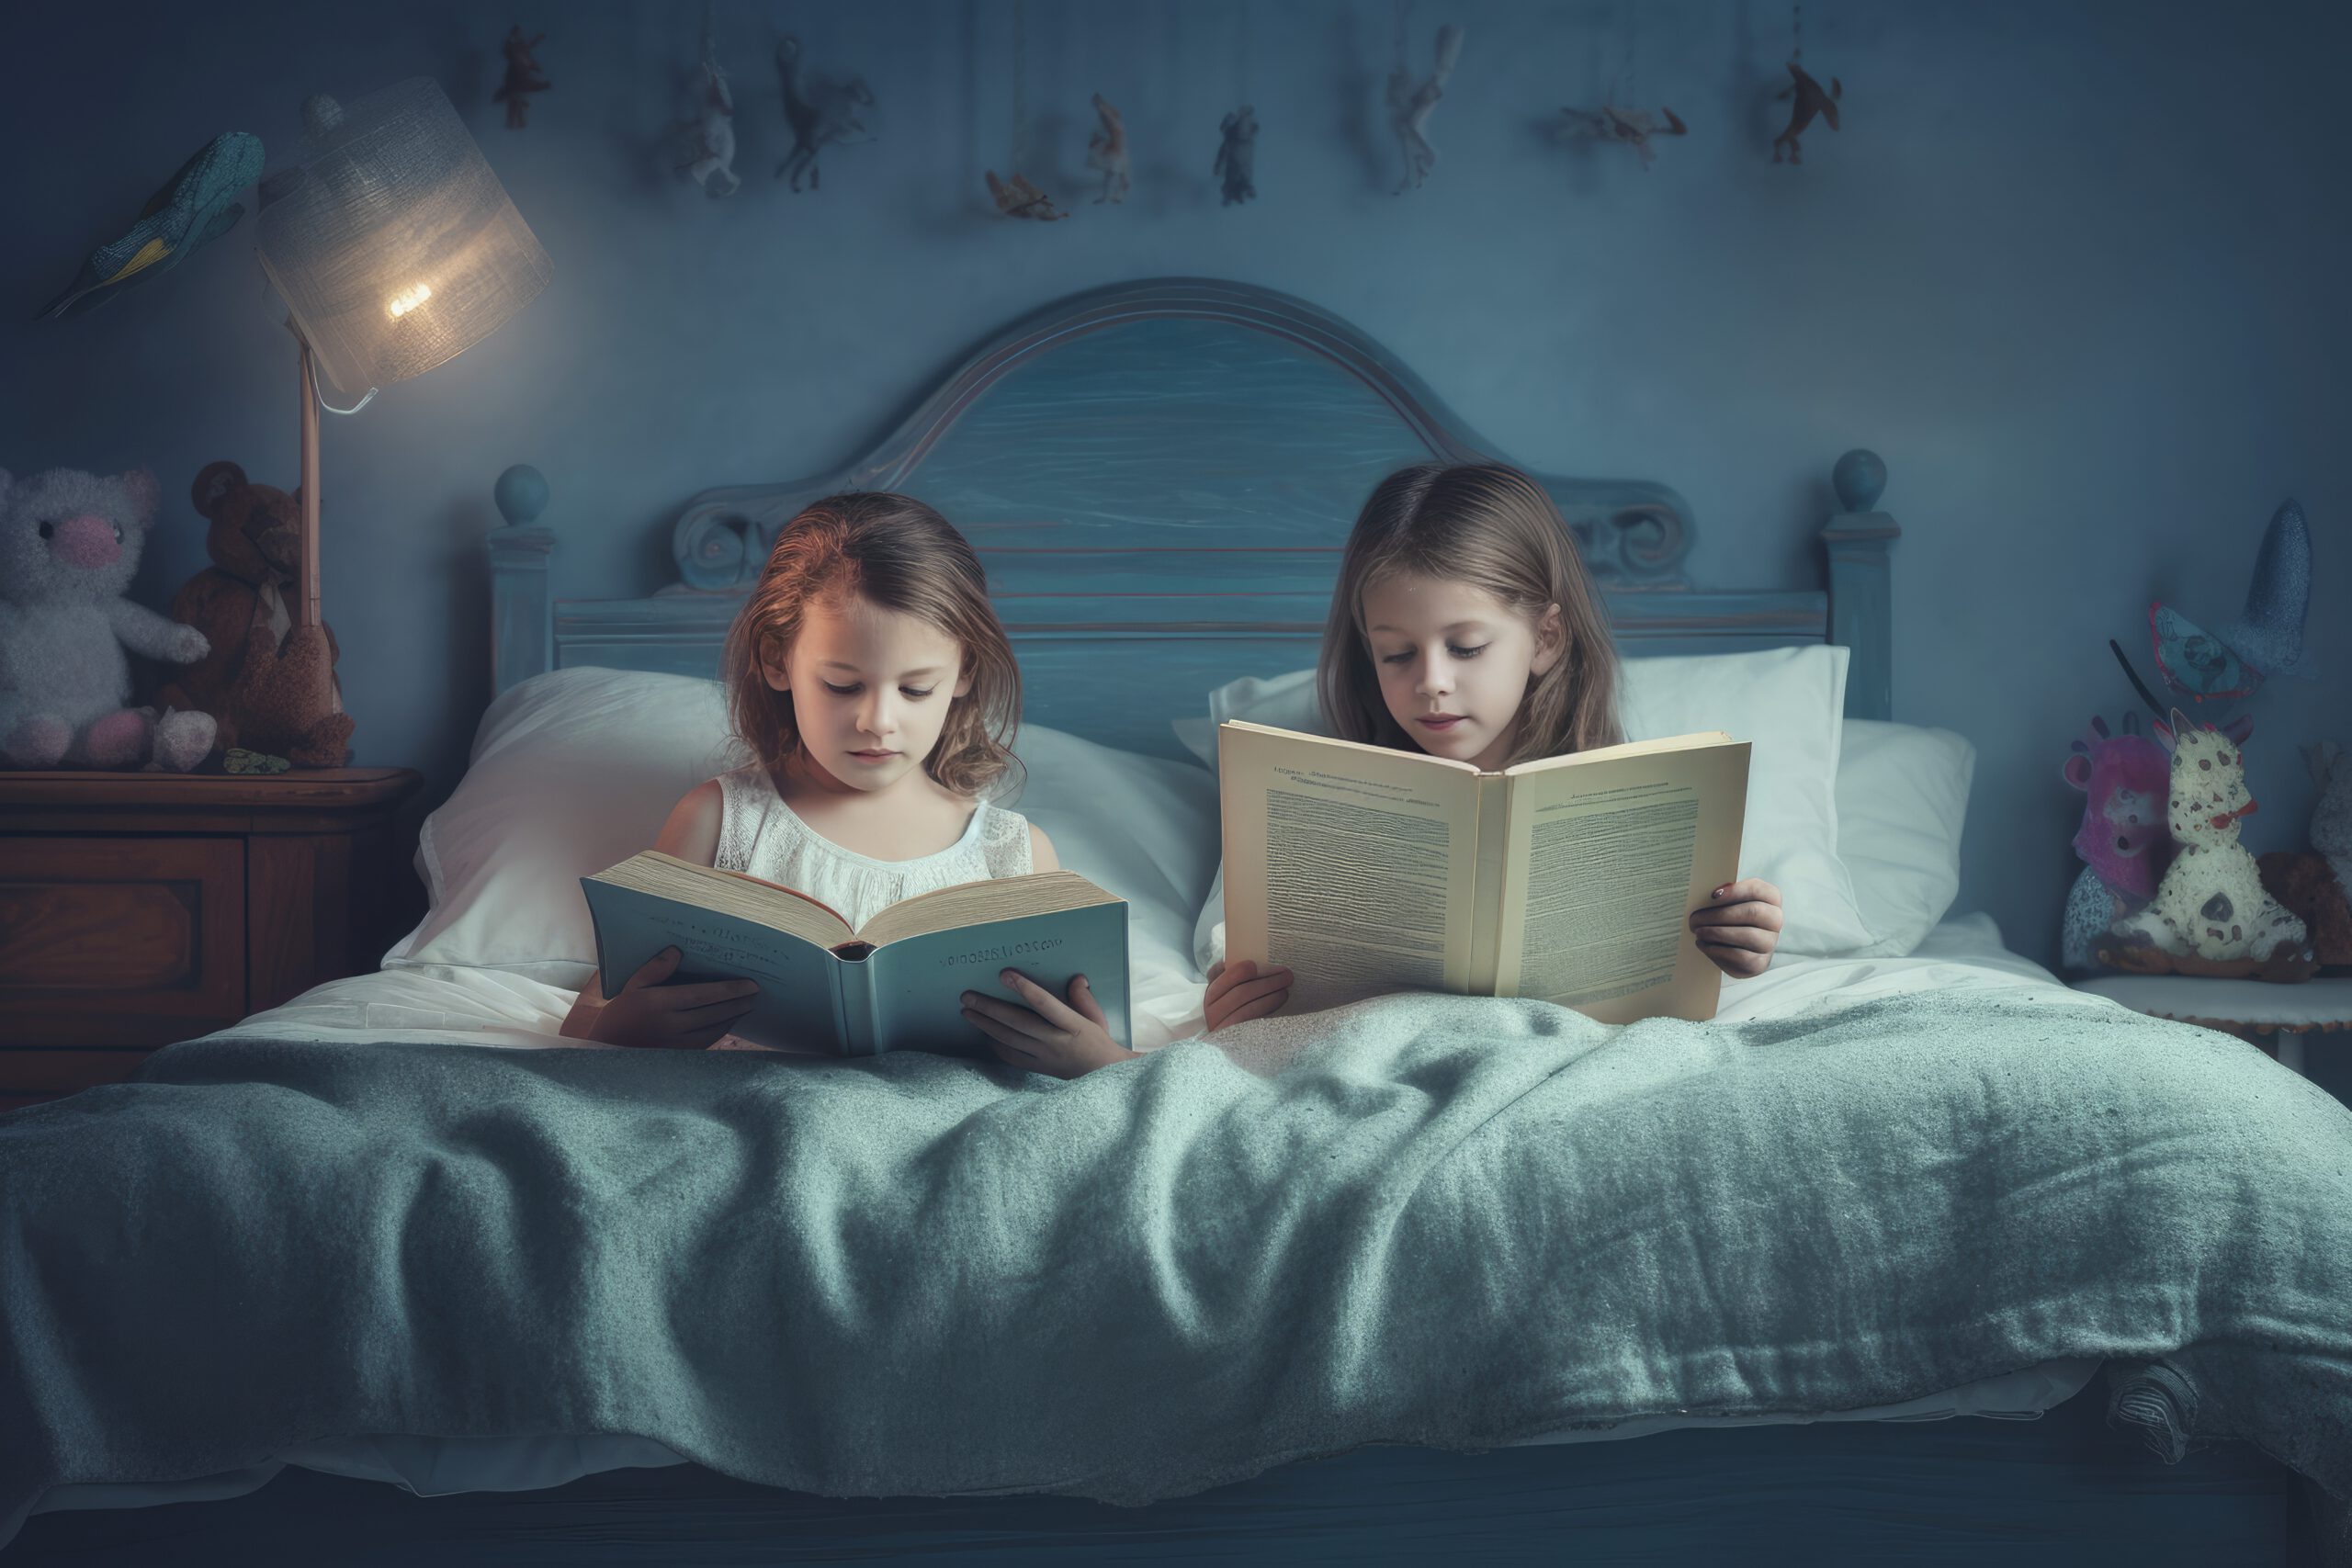 Na tym ujmującym obrazku widoczne są dwie urocze dziewczynki, siedzące w łóżku i czytające książkę przed snem. Ich twarze emanują spokojem i skupieniem, gdy wsłuchują się w historię z kartek. Otoczone miękkimi poduszkami i kocami, stwarzają sobie przytulne i magiczne miejsce do wspólnego odkrywania literackich przygód. Ten obrazek oddaje piękno chwili, gdy czytanie przed snem staje się nie tylko źródłem wiedzy, ale także związku i wspólnych doświadczeń między przyjaciółkami